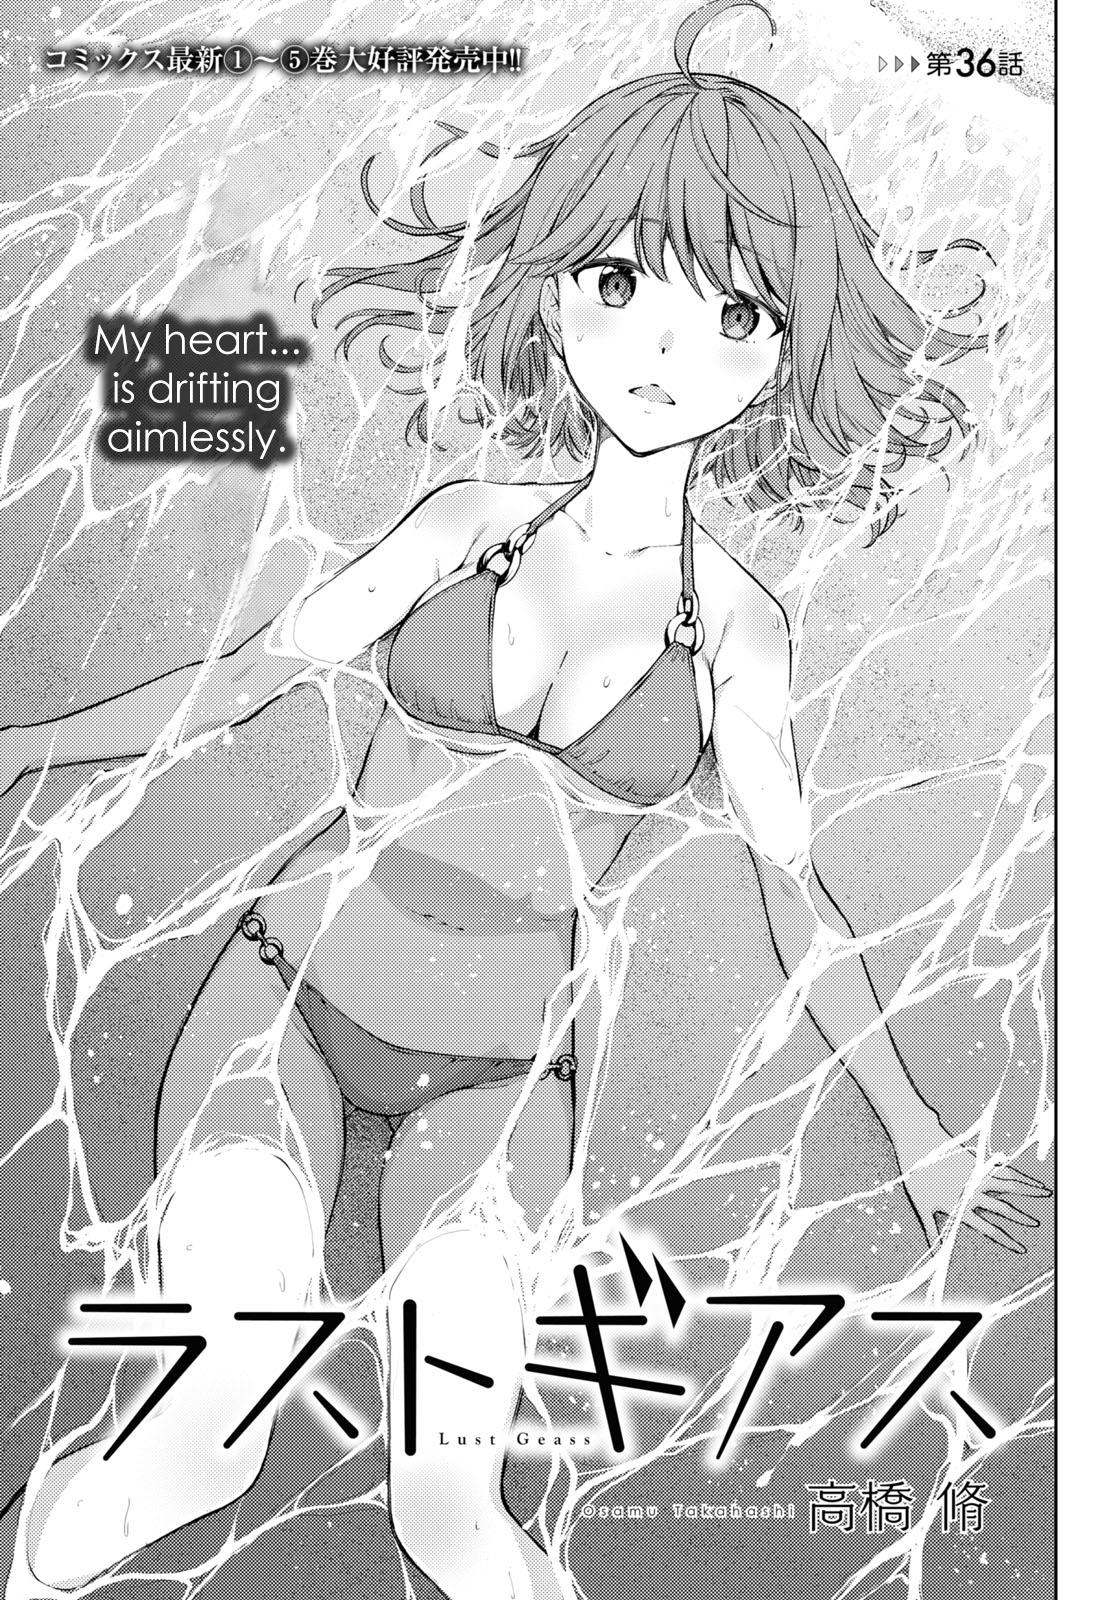 Read Lust Geass Chapter 36 On Mangakakalot